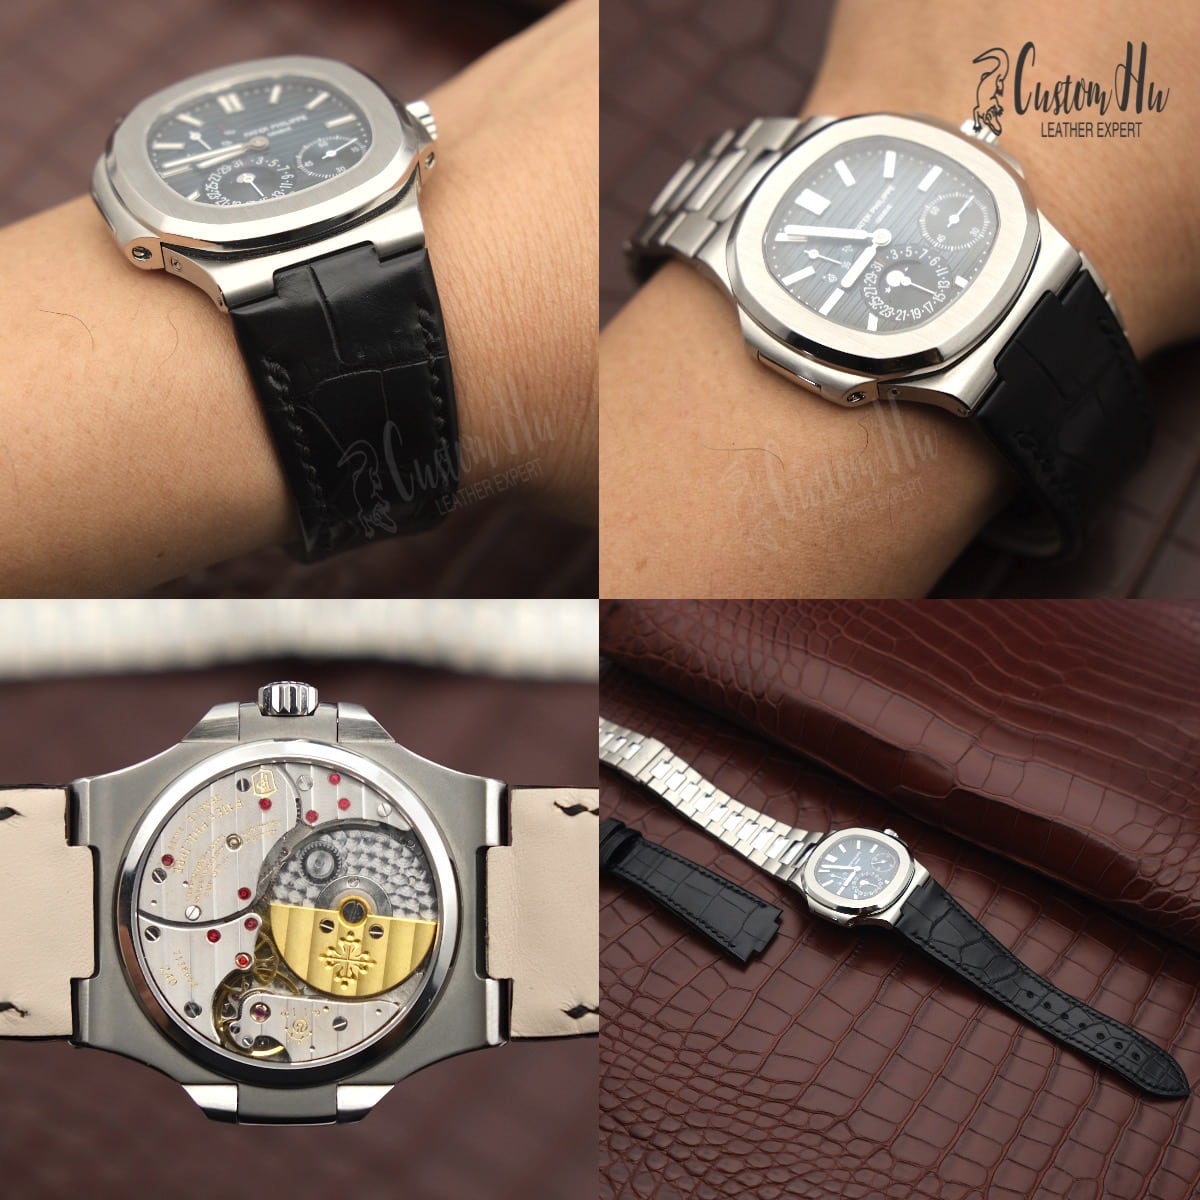 Correa de lujo personalizada para sus relojes Correa de reloj personalizada Admite cualquier estilo y color customhu